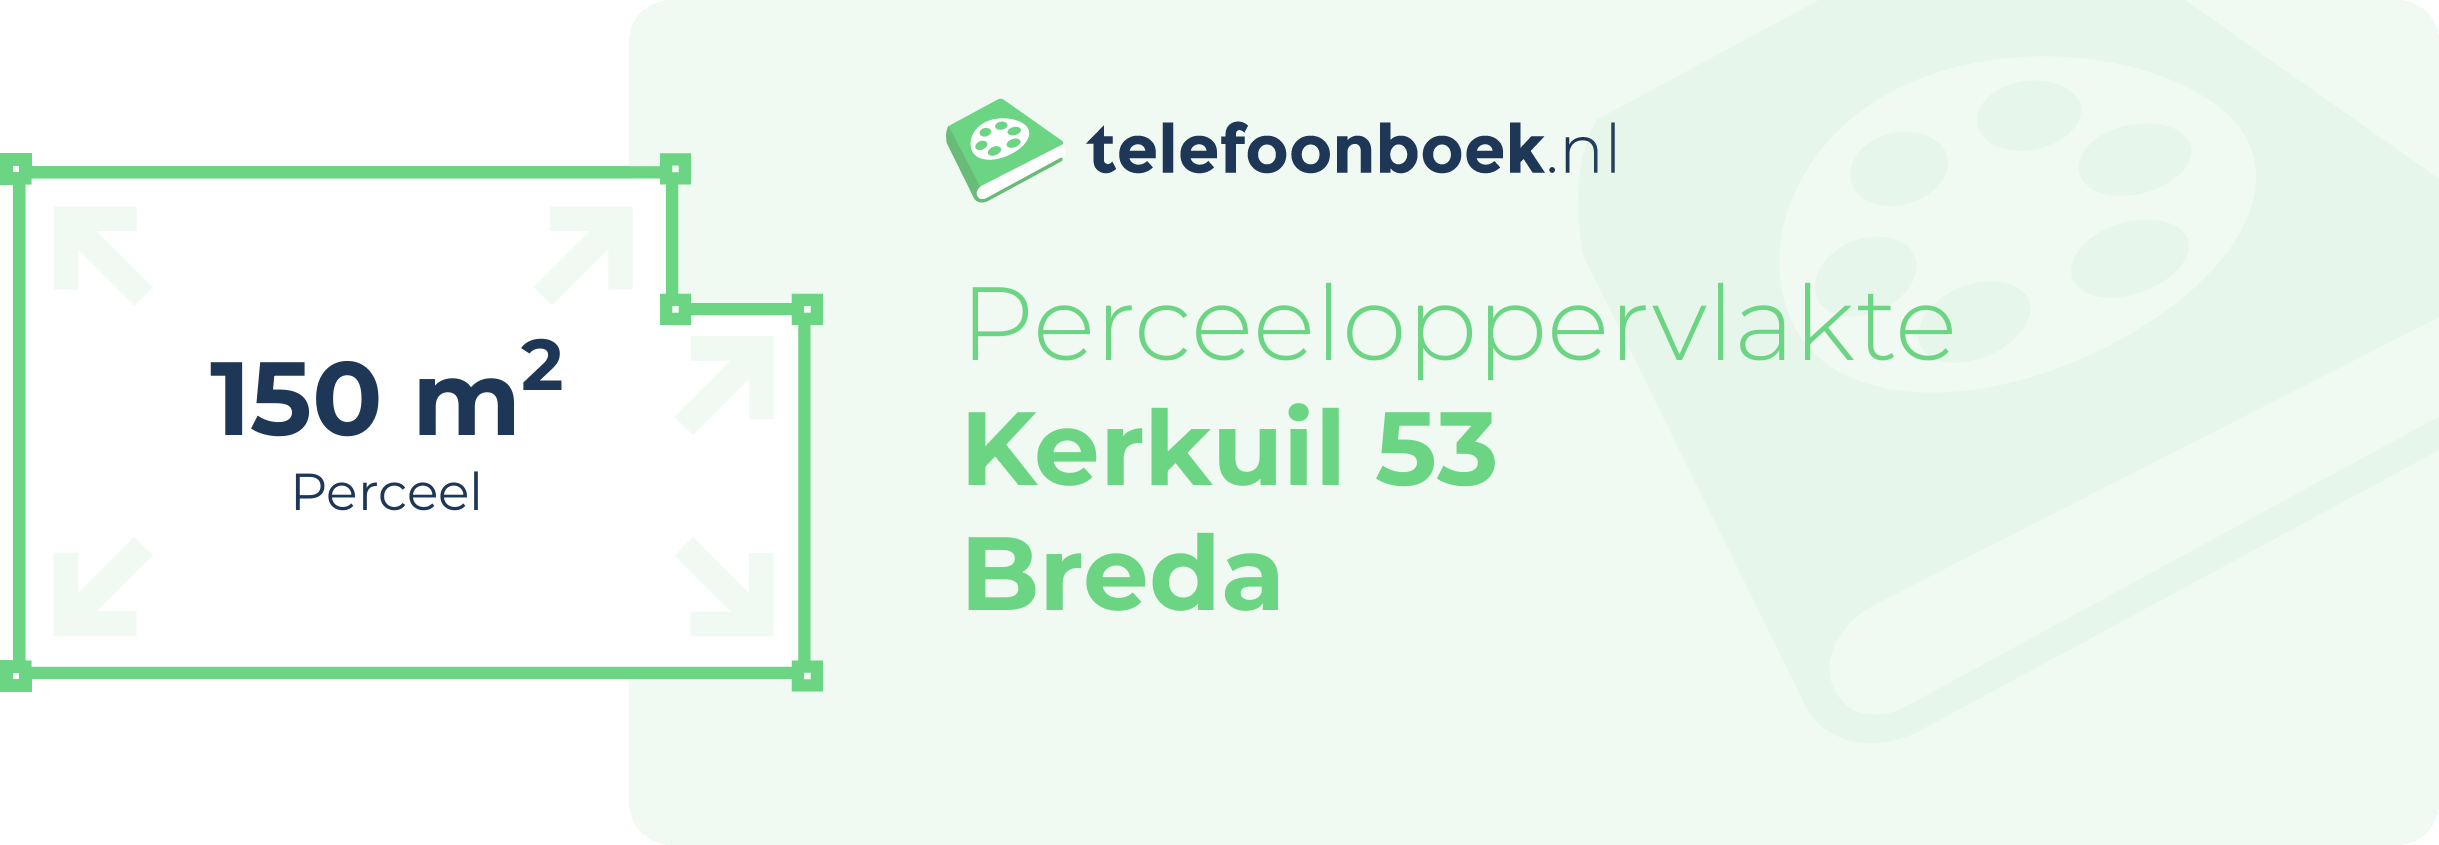 Perceeloppervlakte Kerkuil 53 Breda